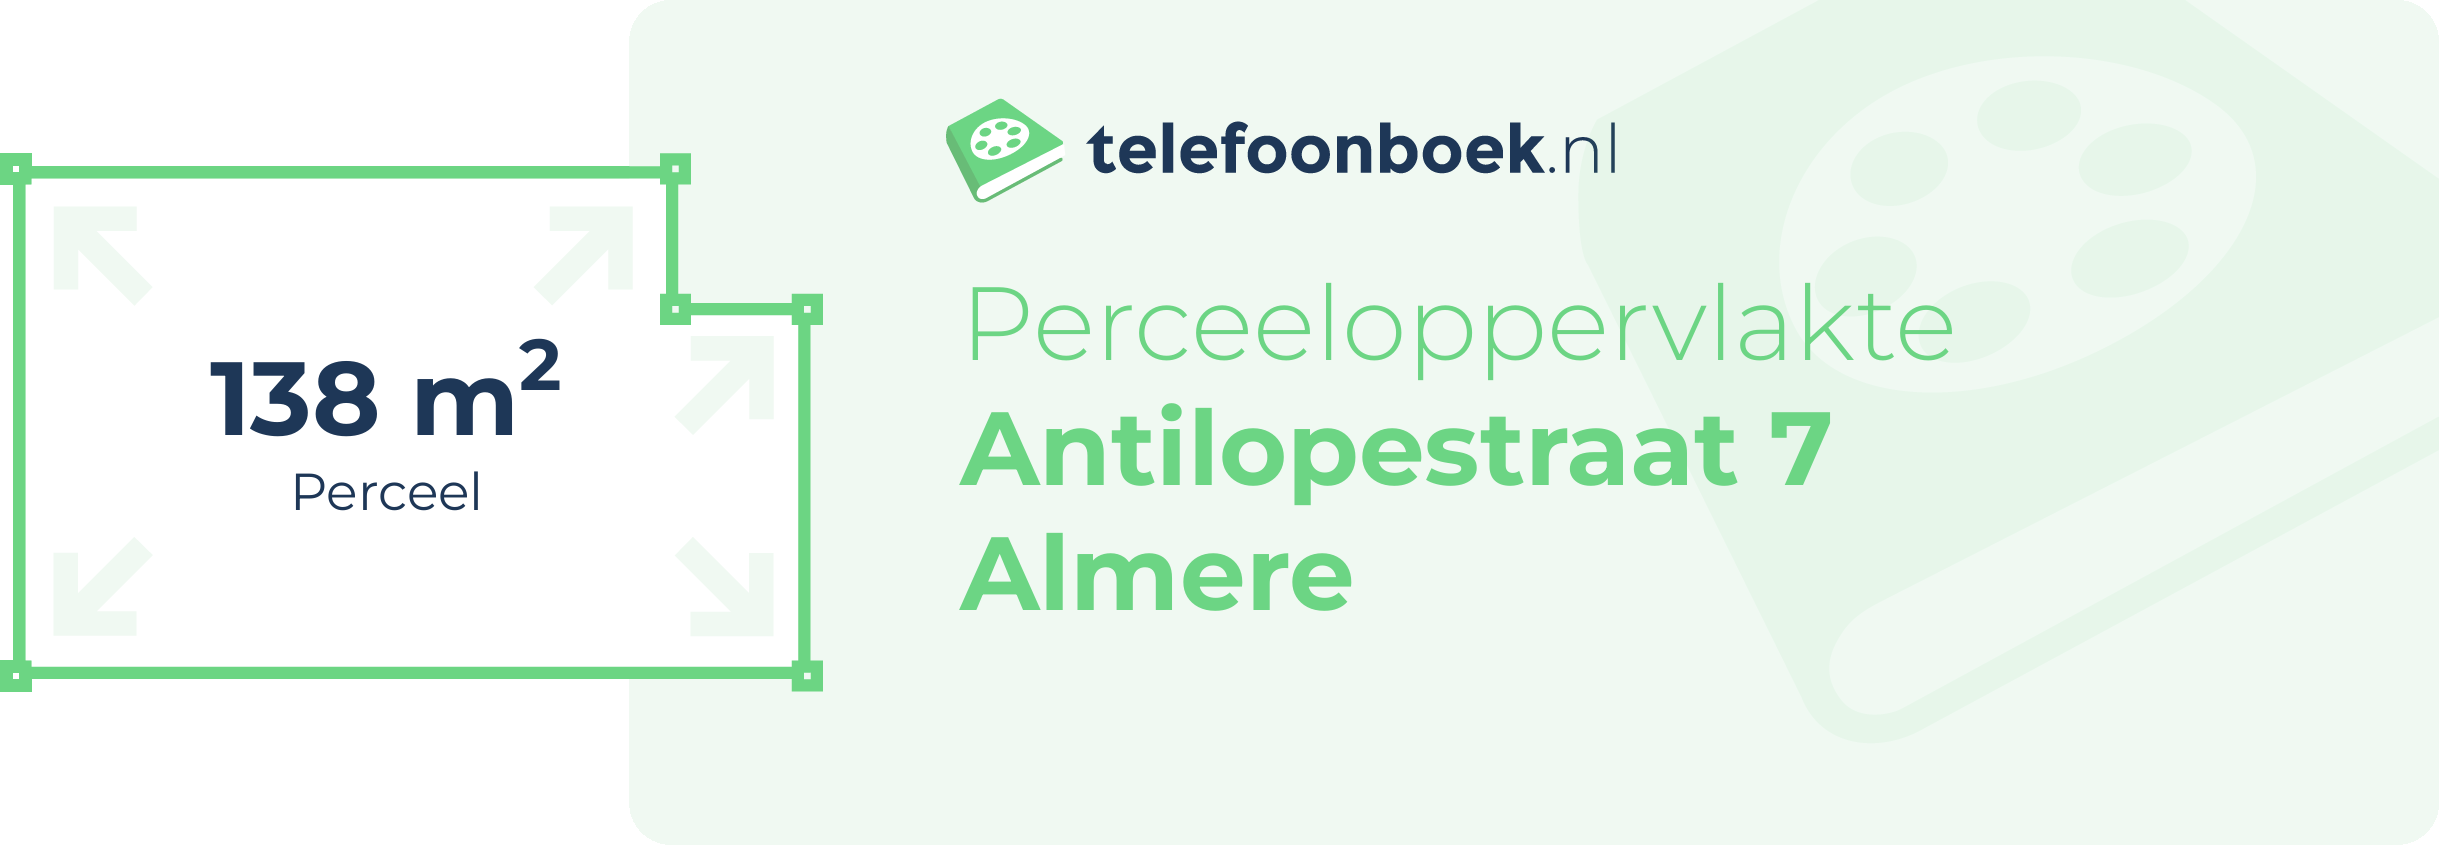 Perceeloppervlakte Antilopestraat 7 Almere